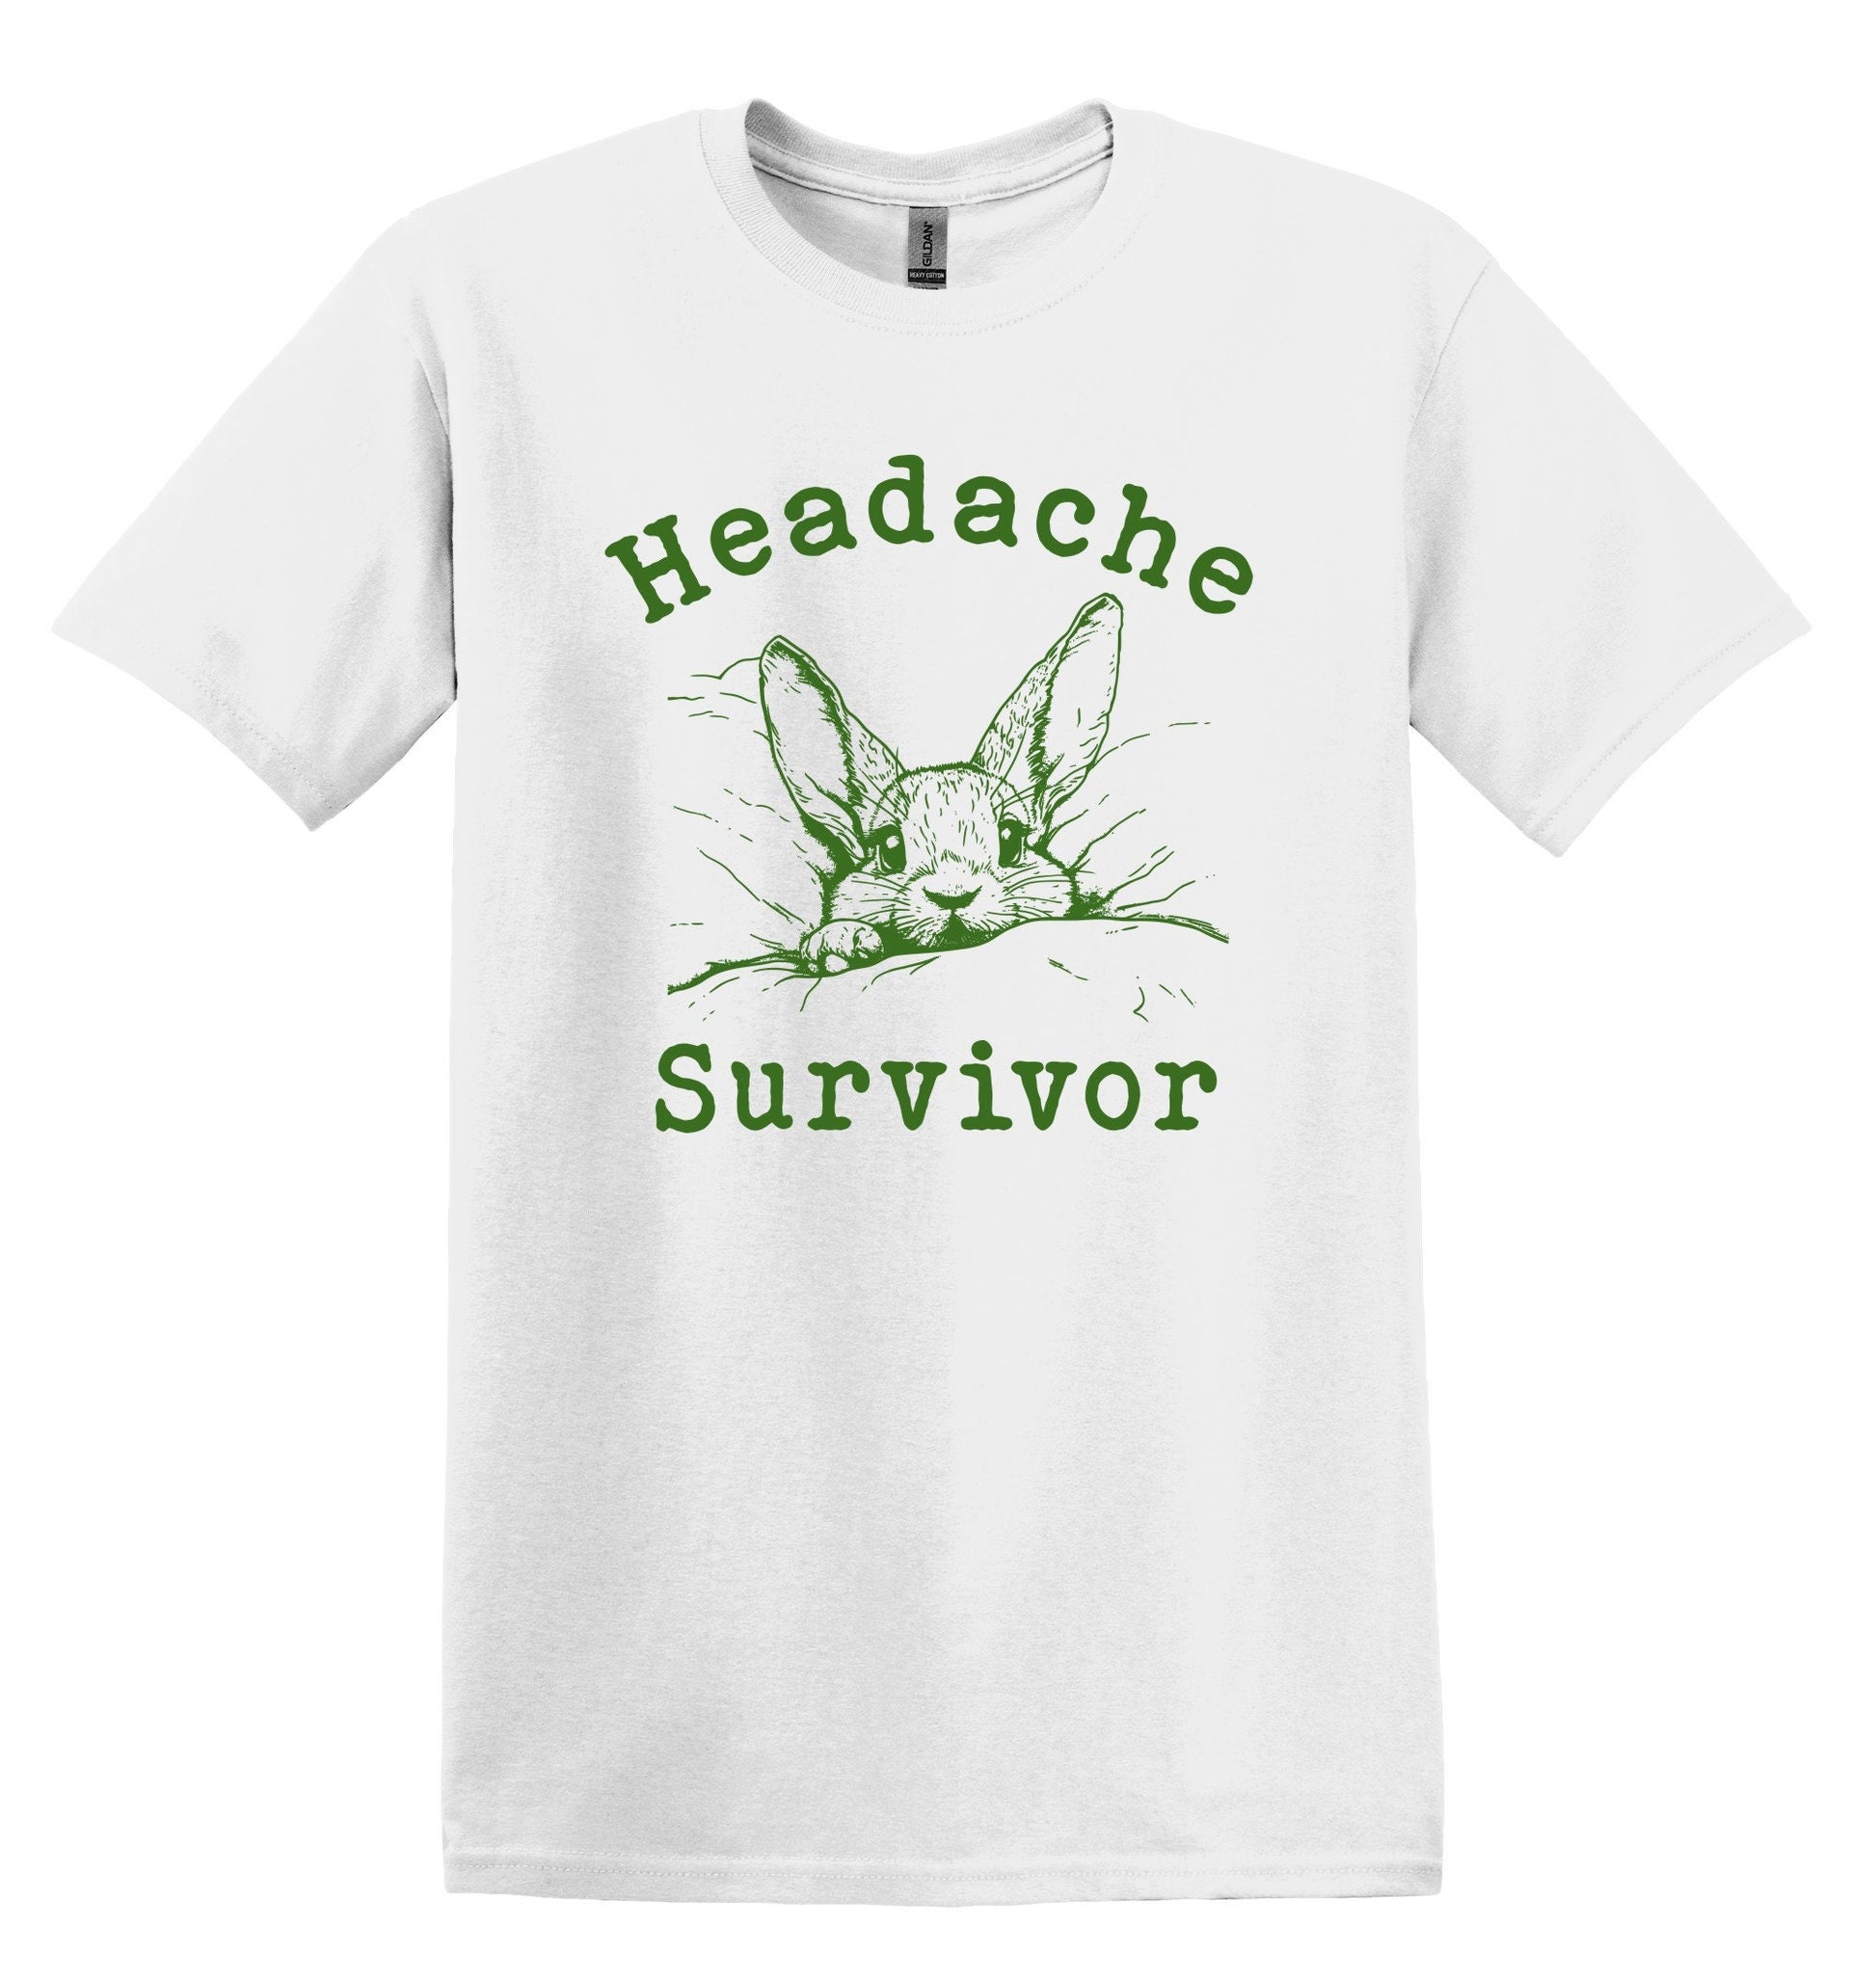 Headache Survivor Shirt Graphic Shirt Funny Shirts Vintage Funny TShirts Minimalist Shirt Unisex Shirt Nostalgia Shirt